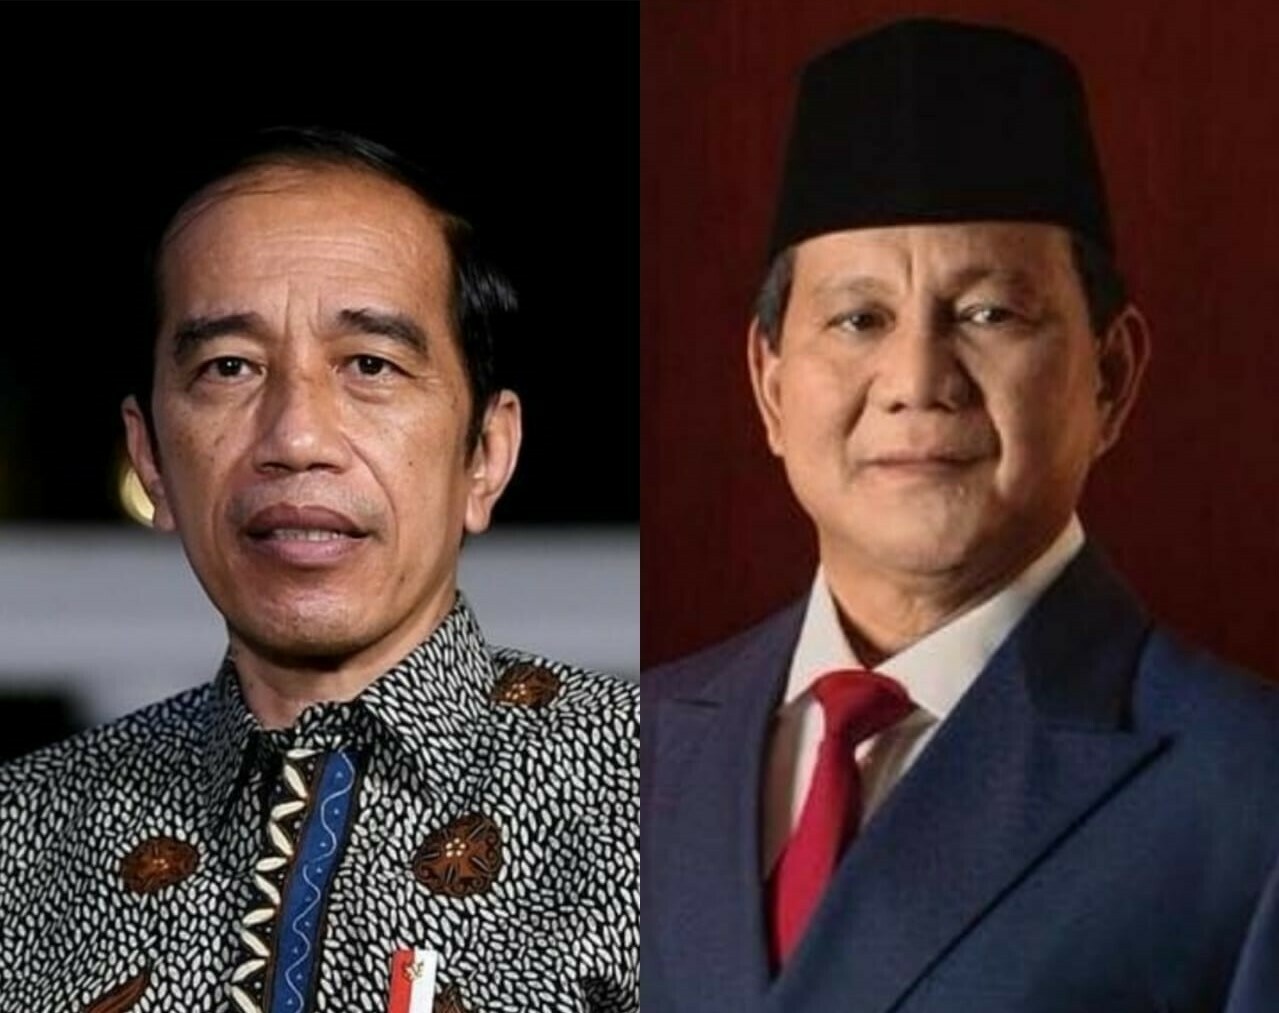 HADIRI: Presiden Jokowi dan Menteri Pertahanan Prabowo Subianto hadiri sebagai saksi pernikahan Atta Halilintar dan Aurel Hermansyah, Sabtu (3/4). (ISTIMEWA/LINGKAR.CO)